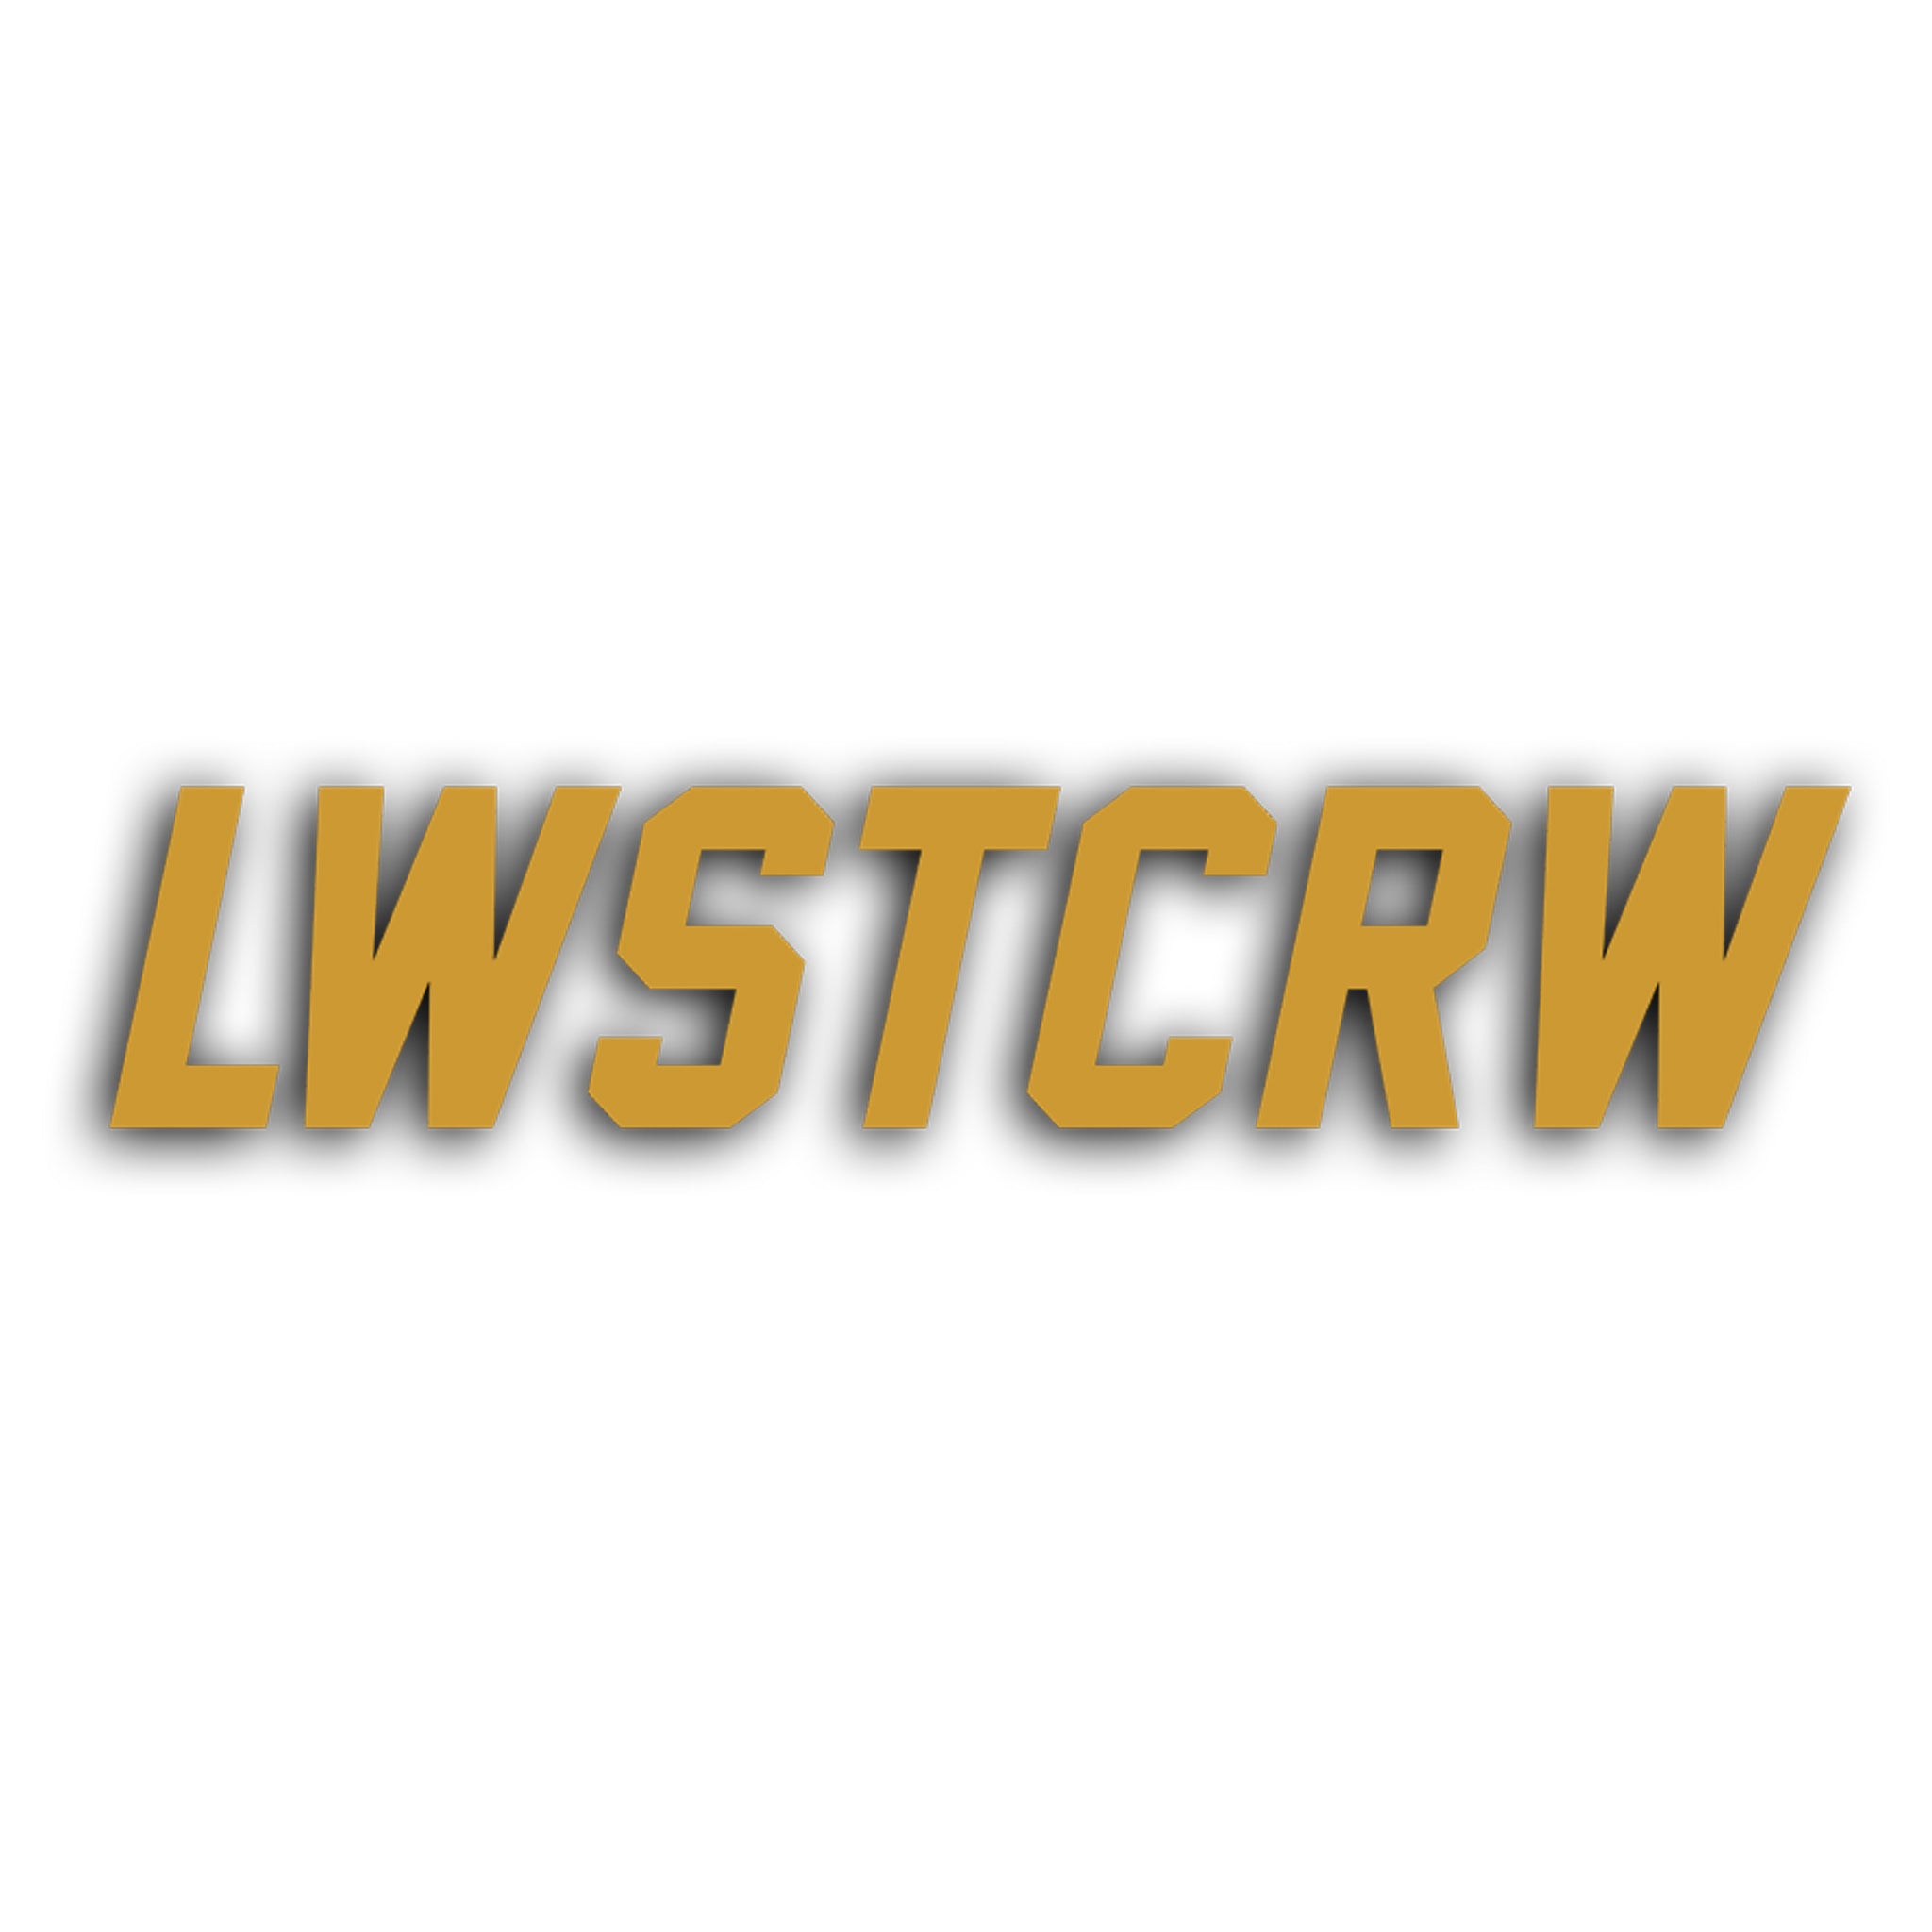 LWSTCRW™ XXL Sticker "JERSEY"